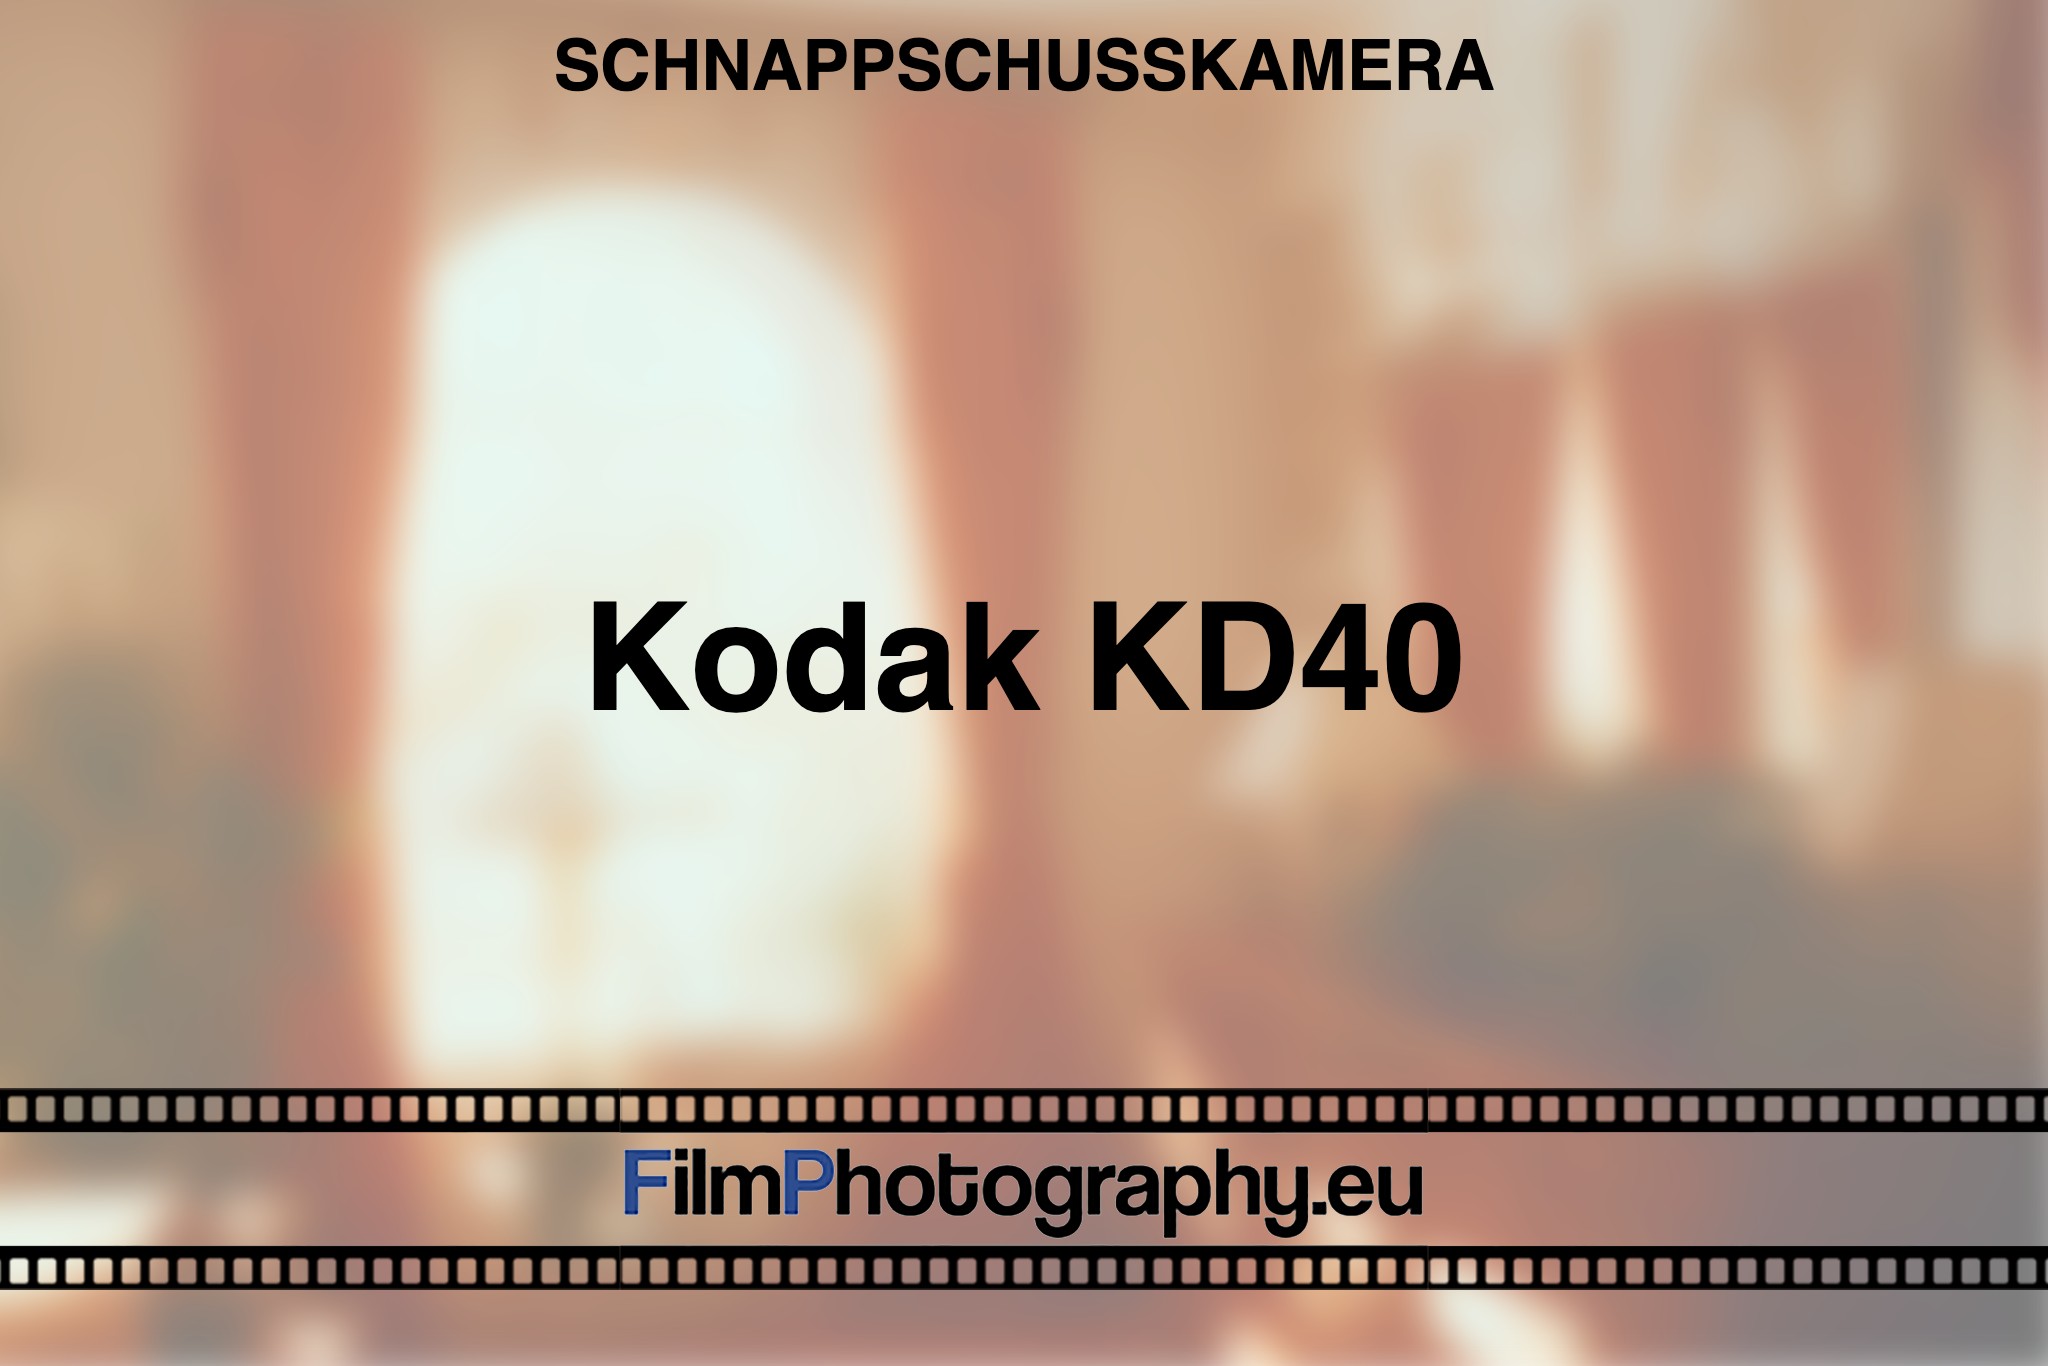 kodak-kd40-schnappschusskamera-bnv